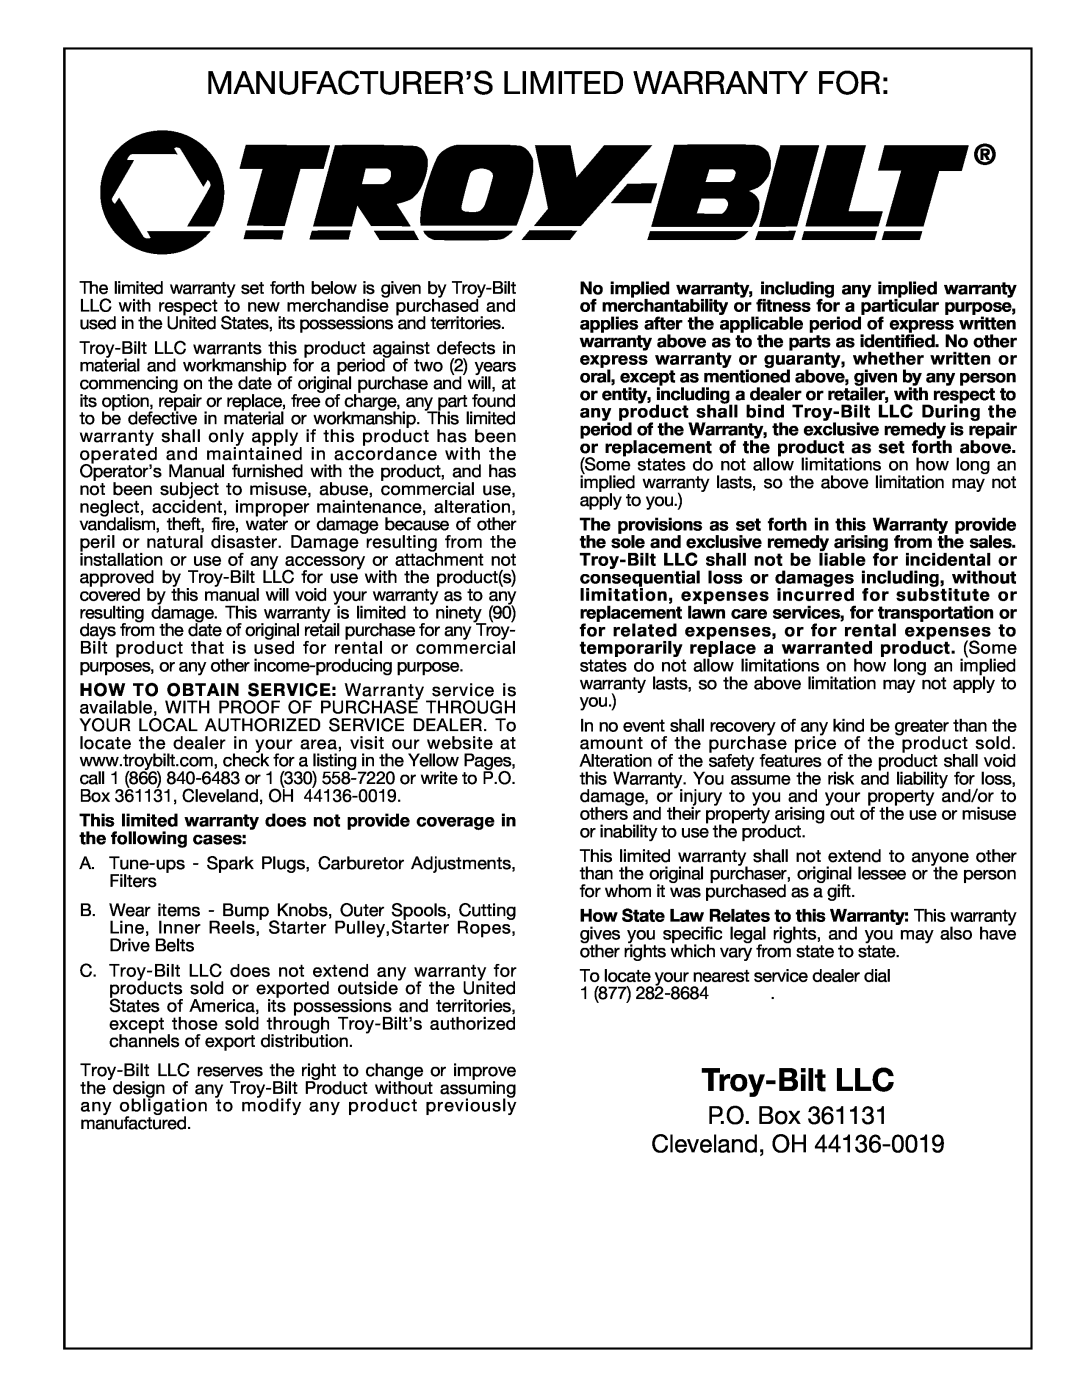 Troy-Bilt 769-00425A manual Manufacturer’S Limited Warranty For, Troy-Bilt LLC, P.O. Box Cleveland, OH 